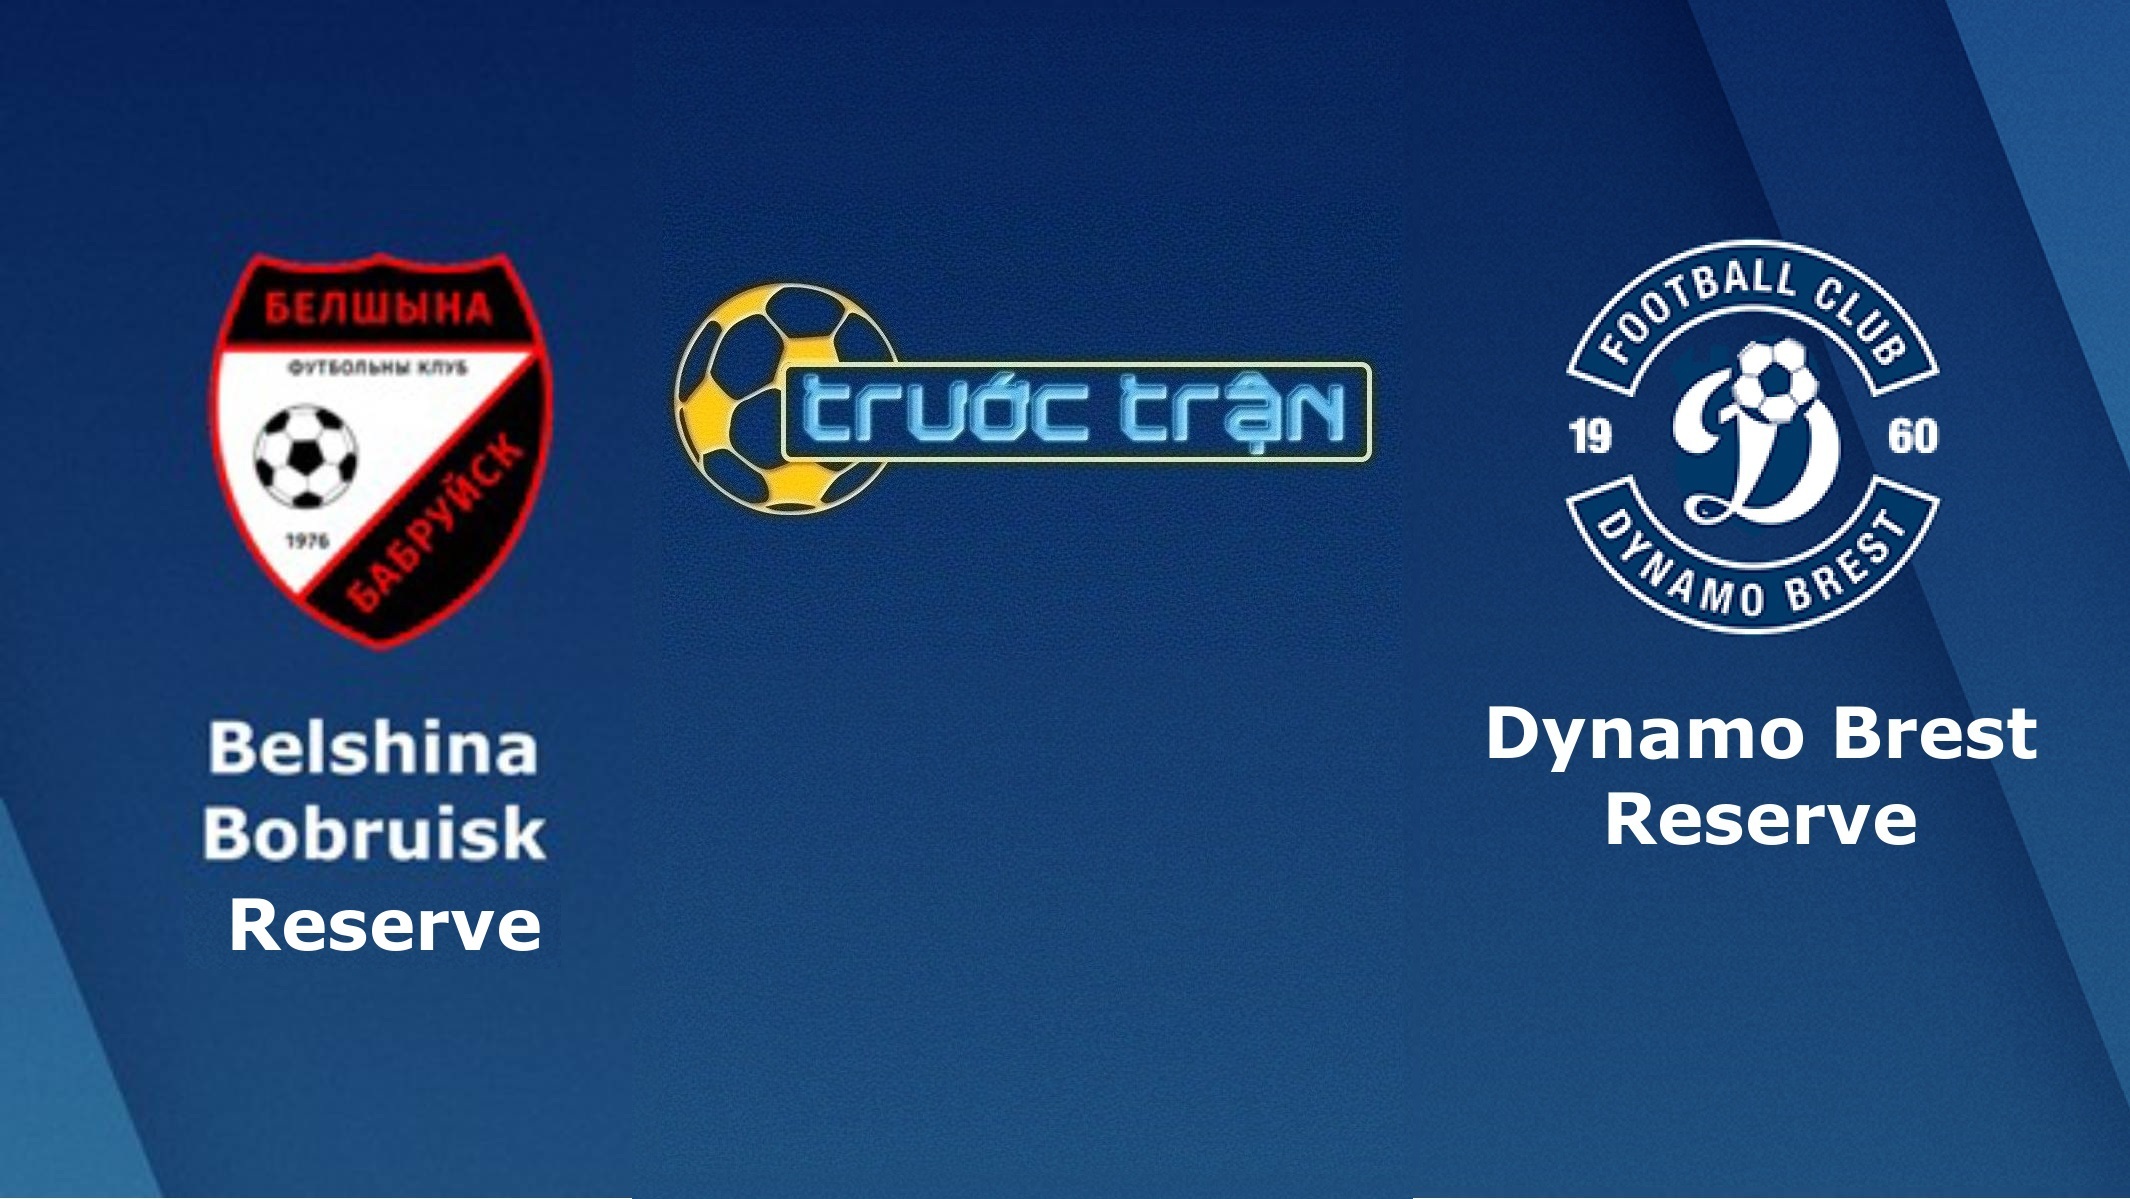 Belshina Babruisk Reserve vs Dinamo Brest Reserves – Tip kèo bóng đá hôm nay – 02/05